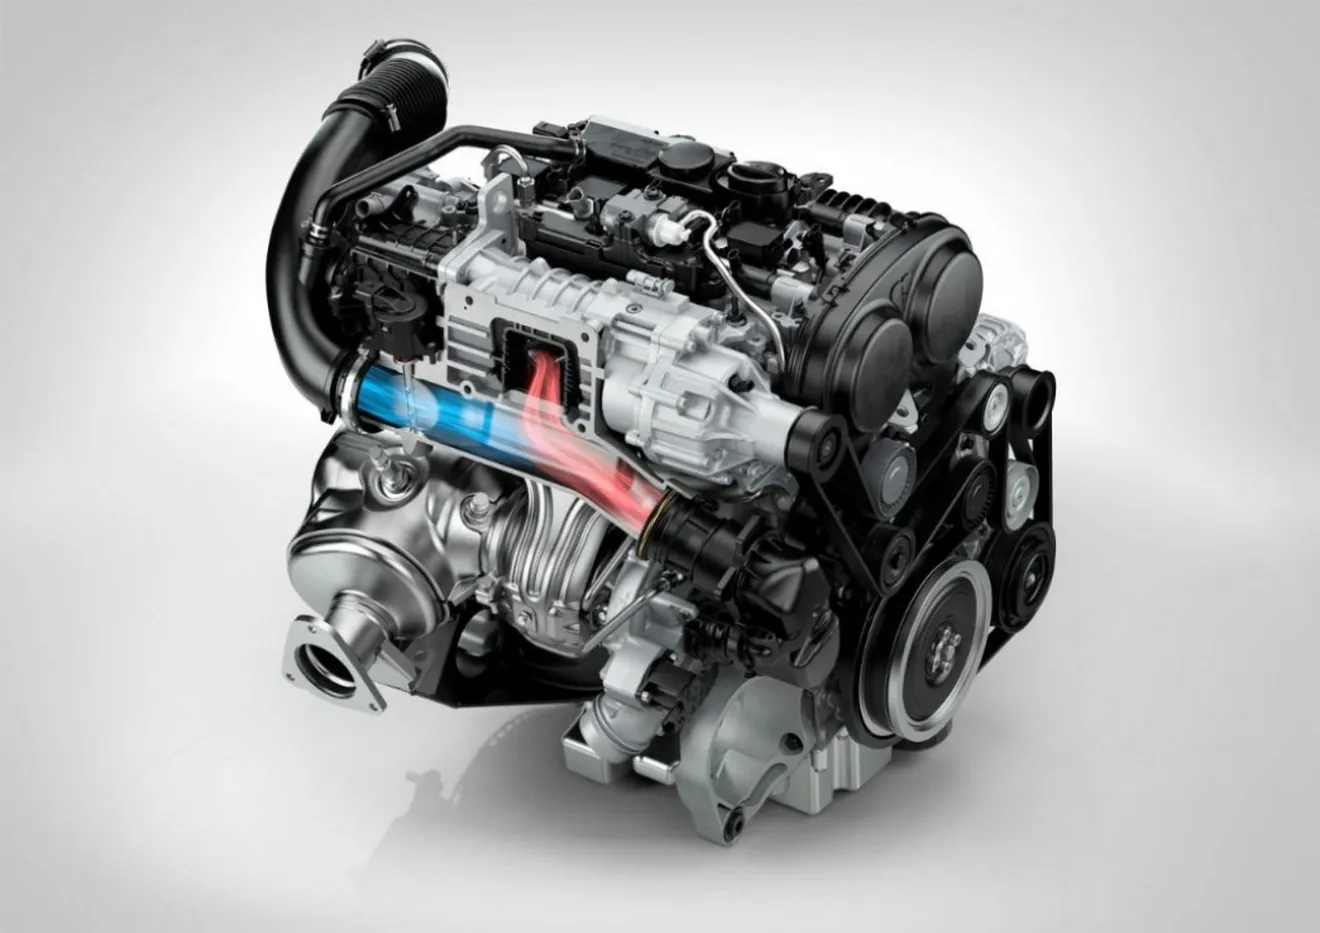 Volvo confirma que una nueva gama de motores de tres cilindros está en camino